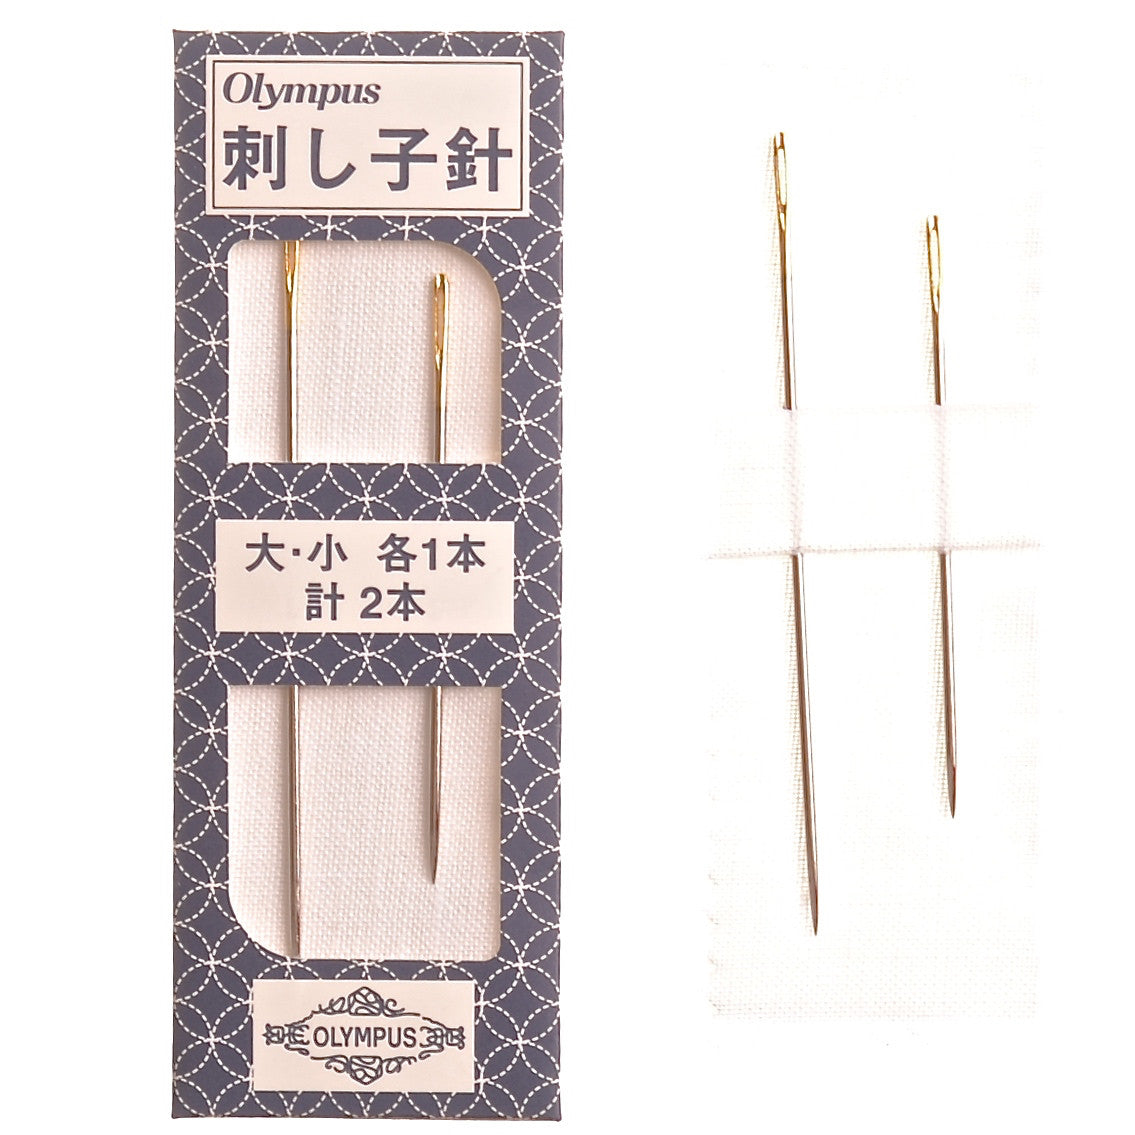 10pcs/pack Good Quality Sashiko Needles Set Hand Sewing Needle